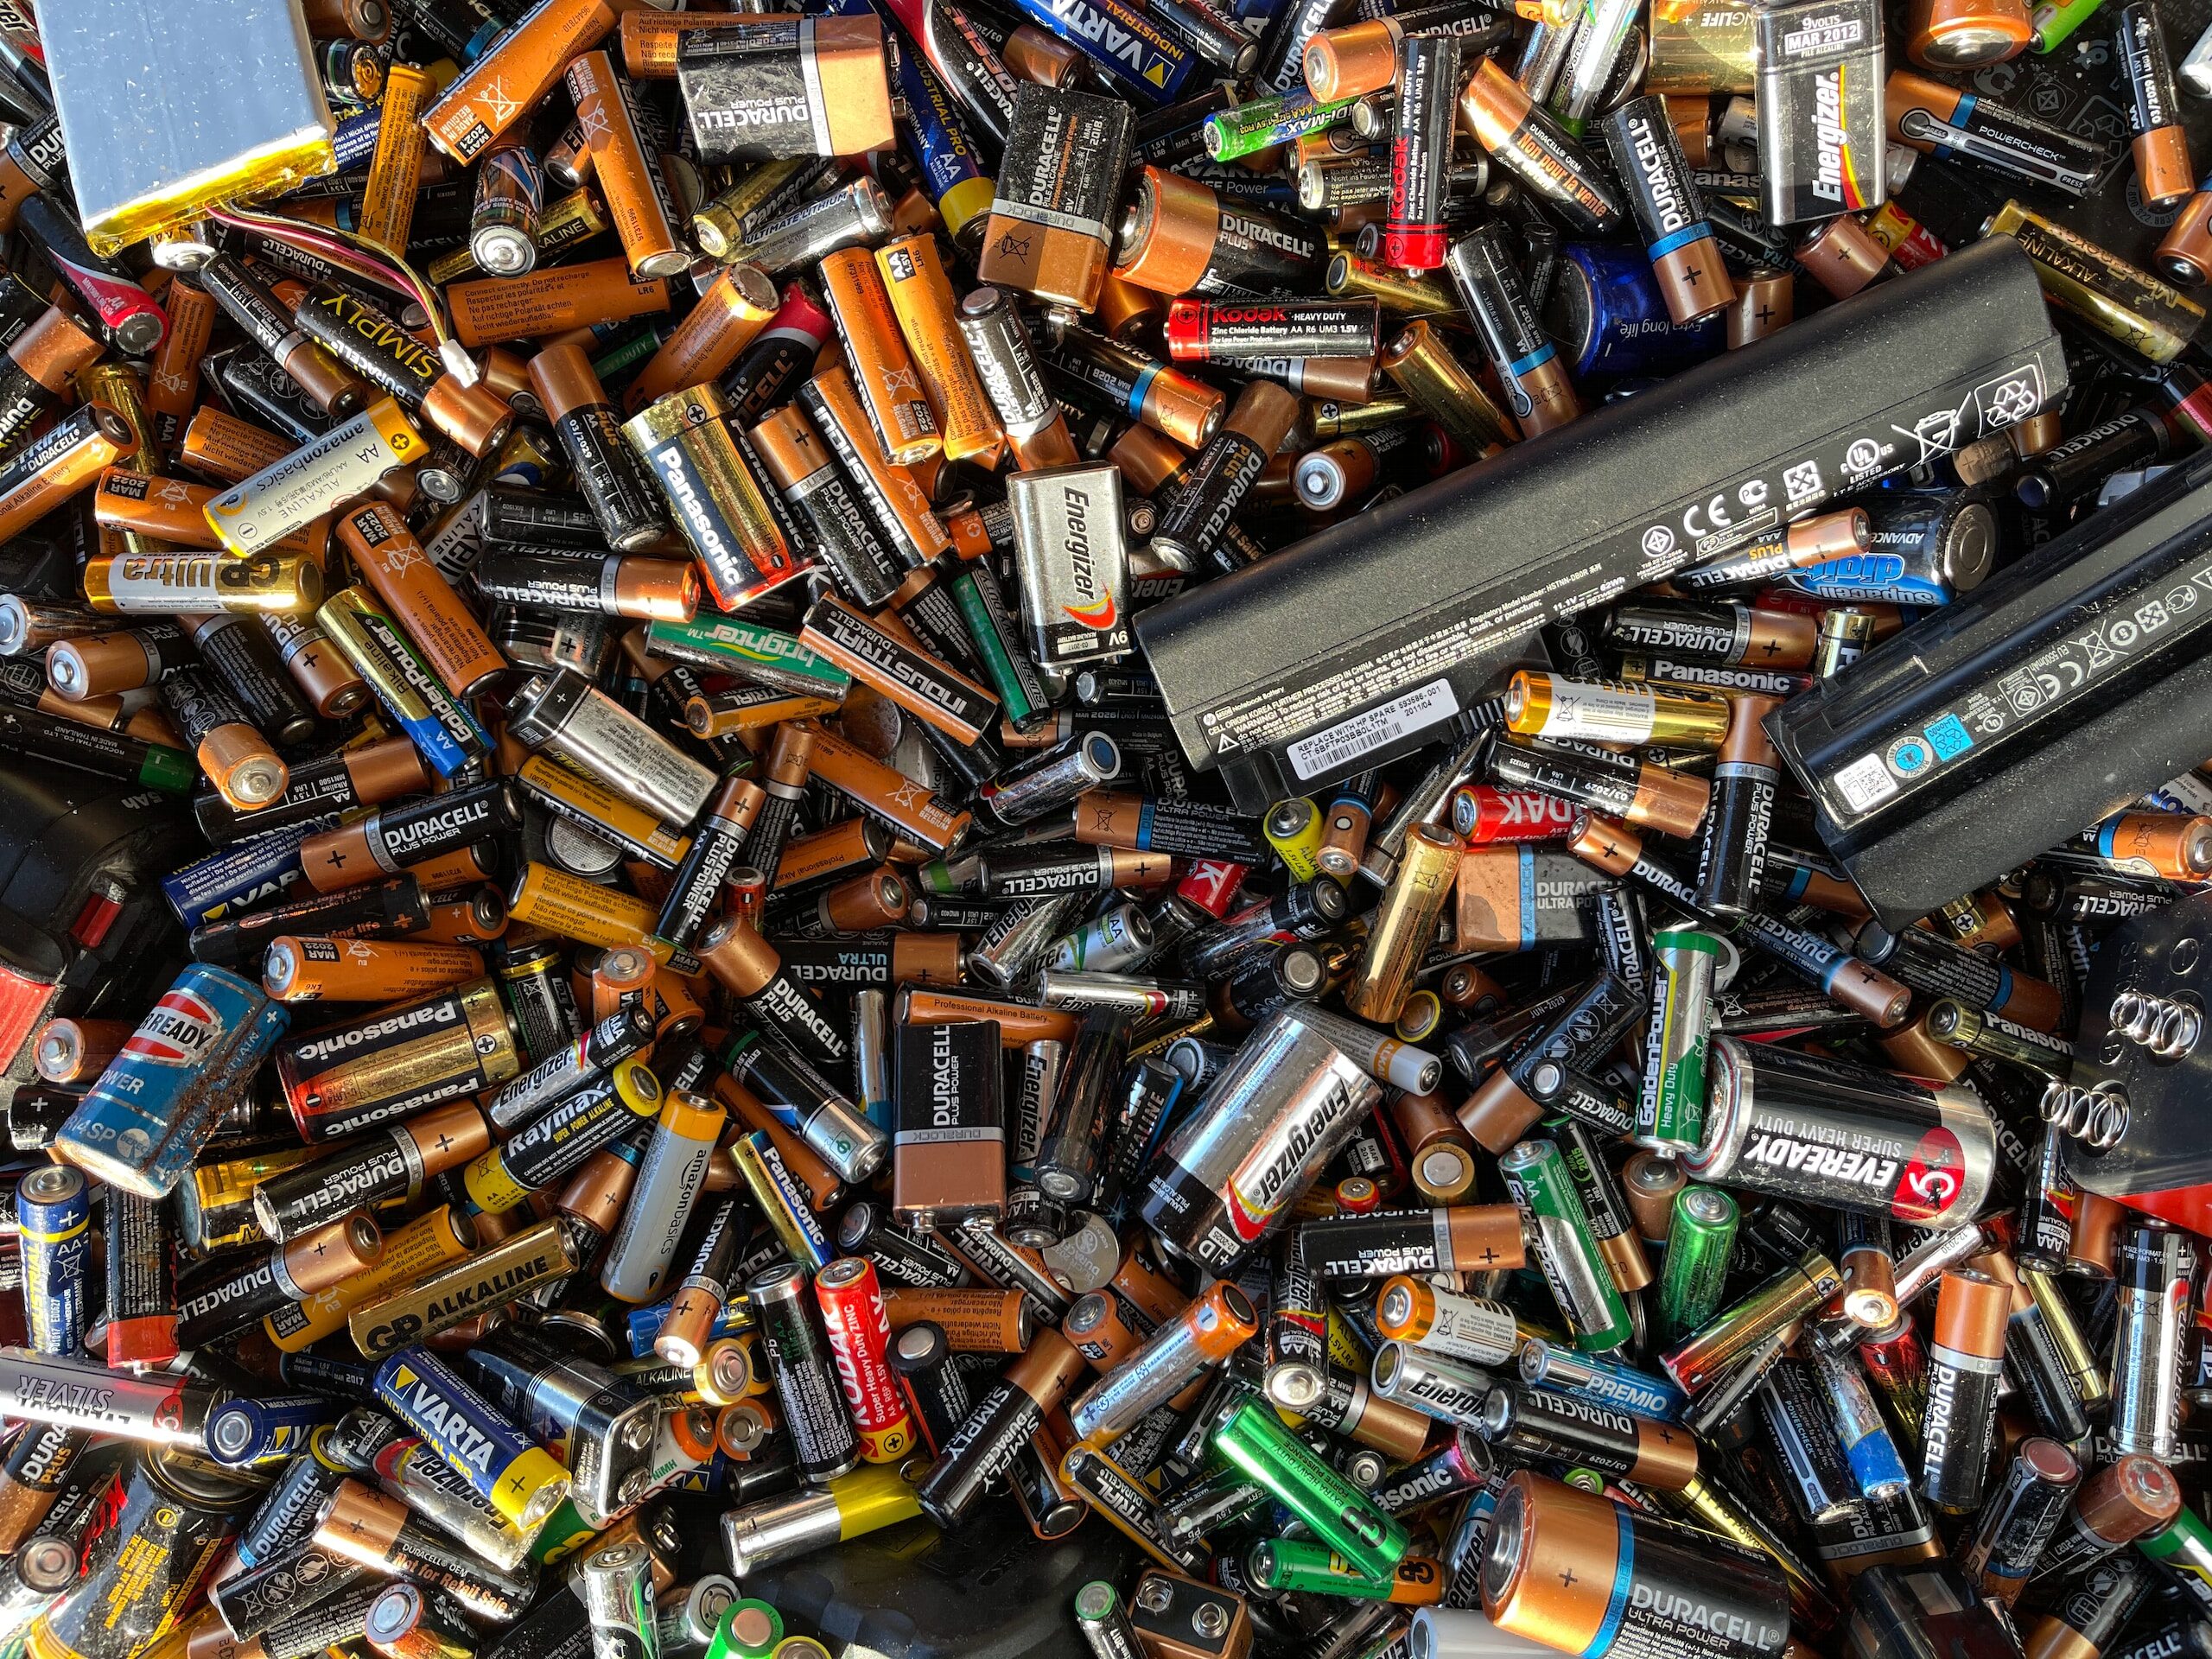 Nederland en Duitsland ondertekenen intentieovereenkomst innovatieve batterijtechnologie